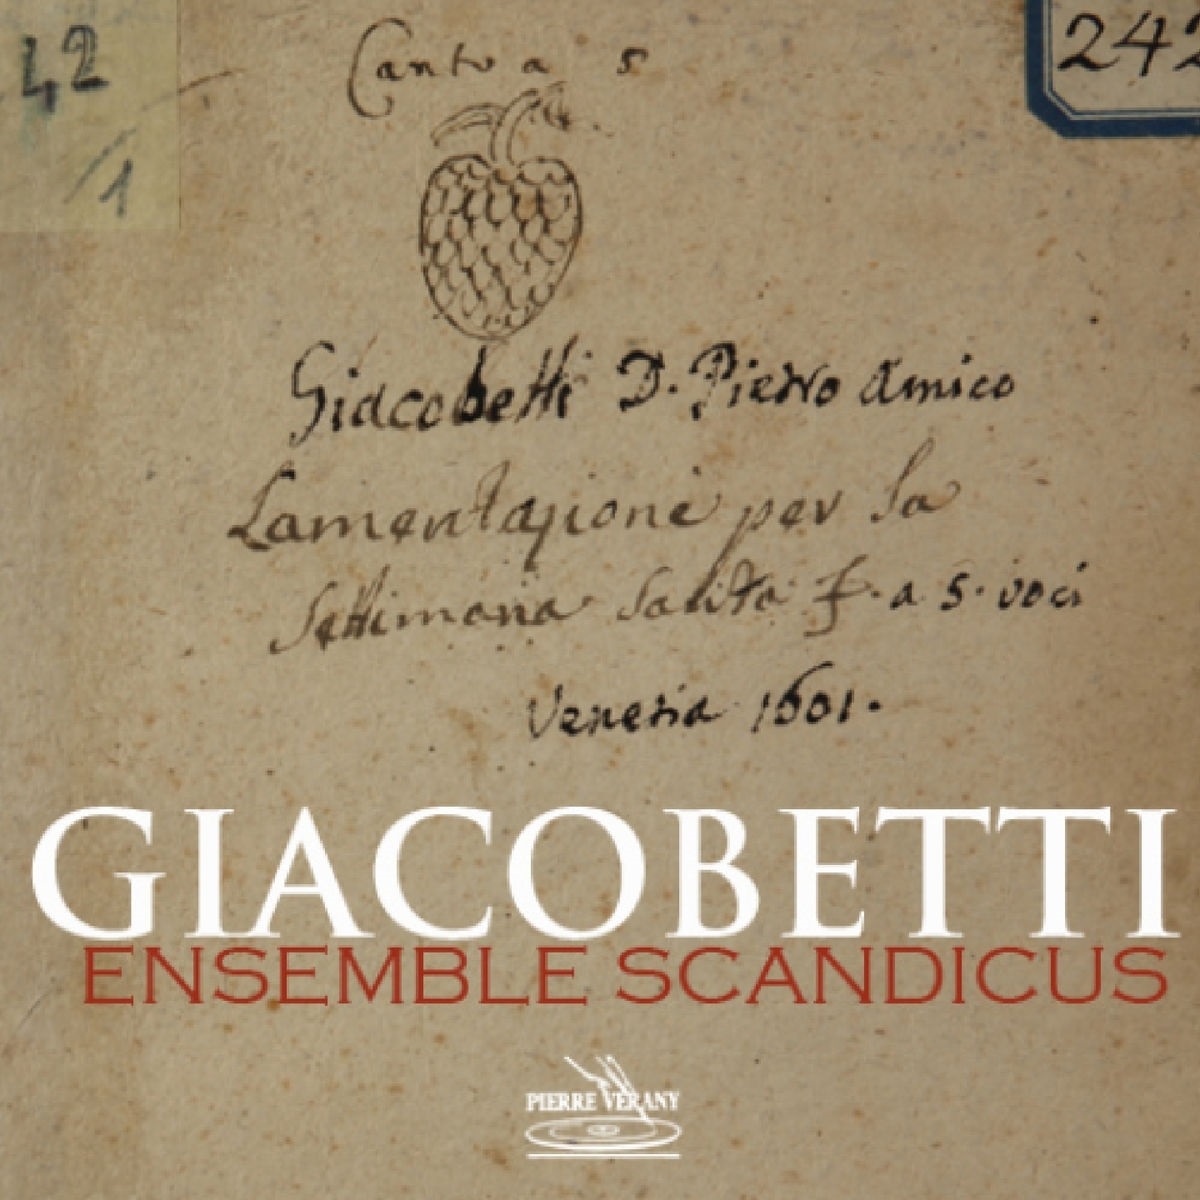 Ensemble Scandicus – Giacobetti: Lamentazioni (2017) [FLAC 24bit/88,2kHz]